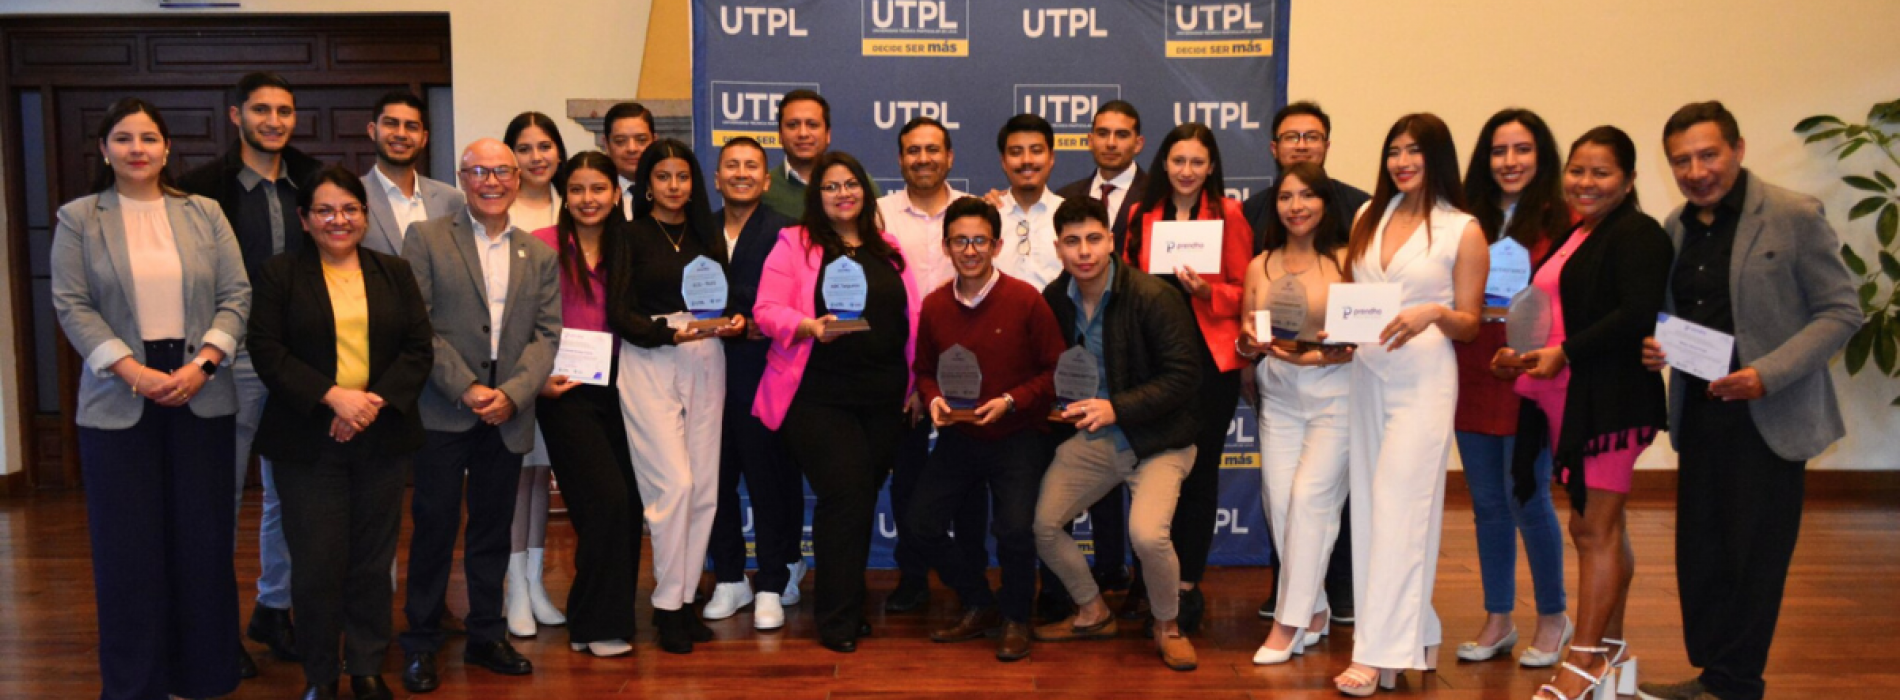 Prendho UTPL lanza segunda convocatoria para emprendedores innovadores